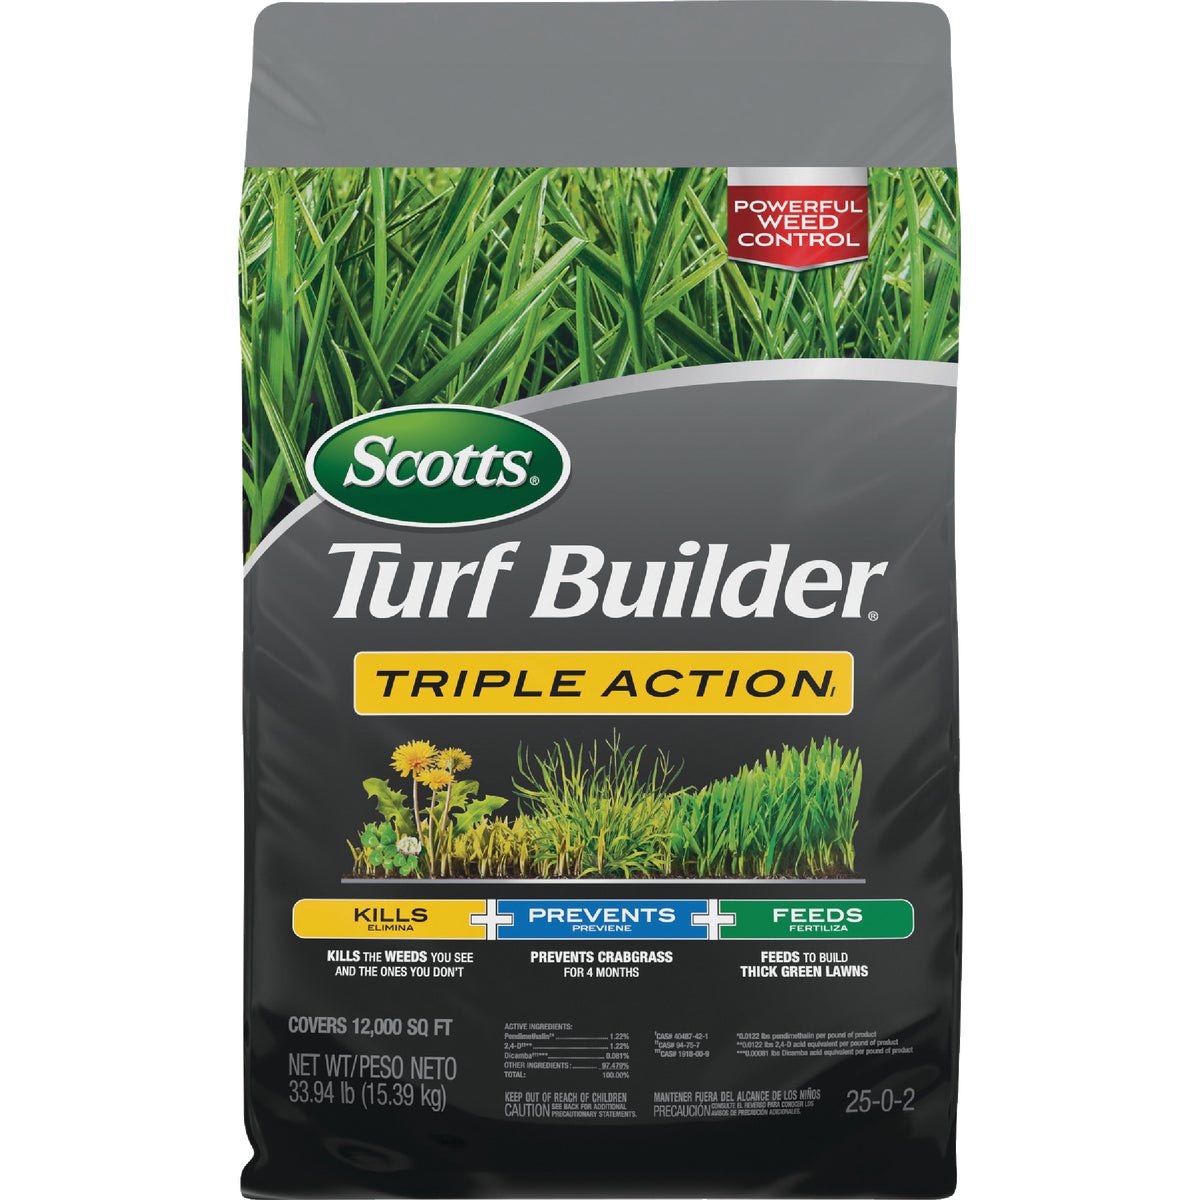 Scotts Turf Builder Triple Action 34 Lb. 12,000 Sq. Ft. Weed Killer Plus Lawn Fertilizer